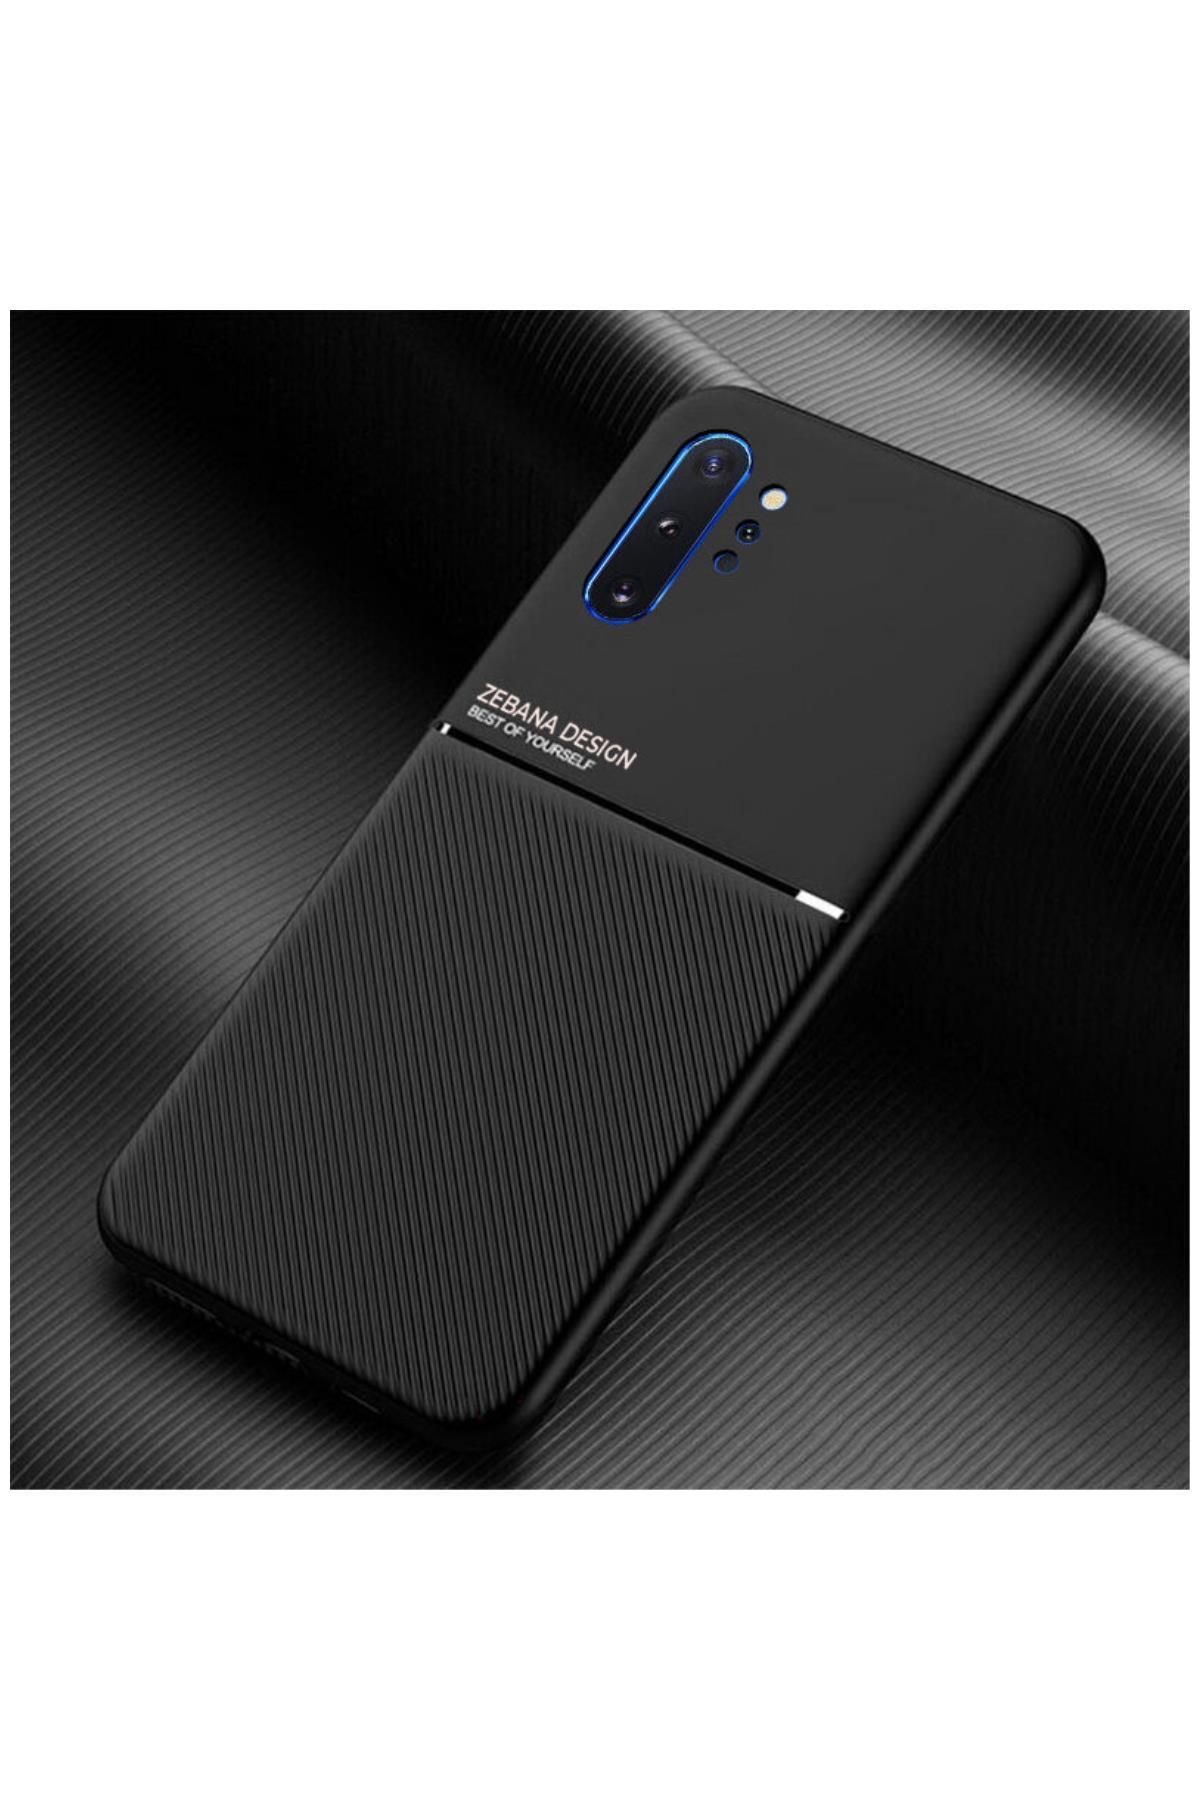 Dara Aksesuar Samsung Galaxy Note 10 Plus Uyumlu Kılıf Zebana Design Silikon Kılıf Siyah